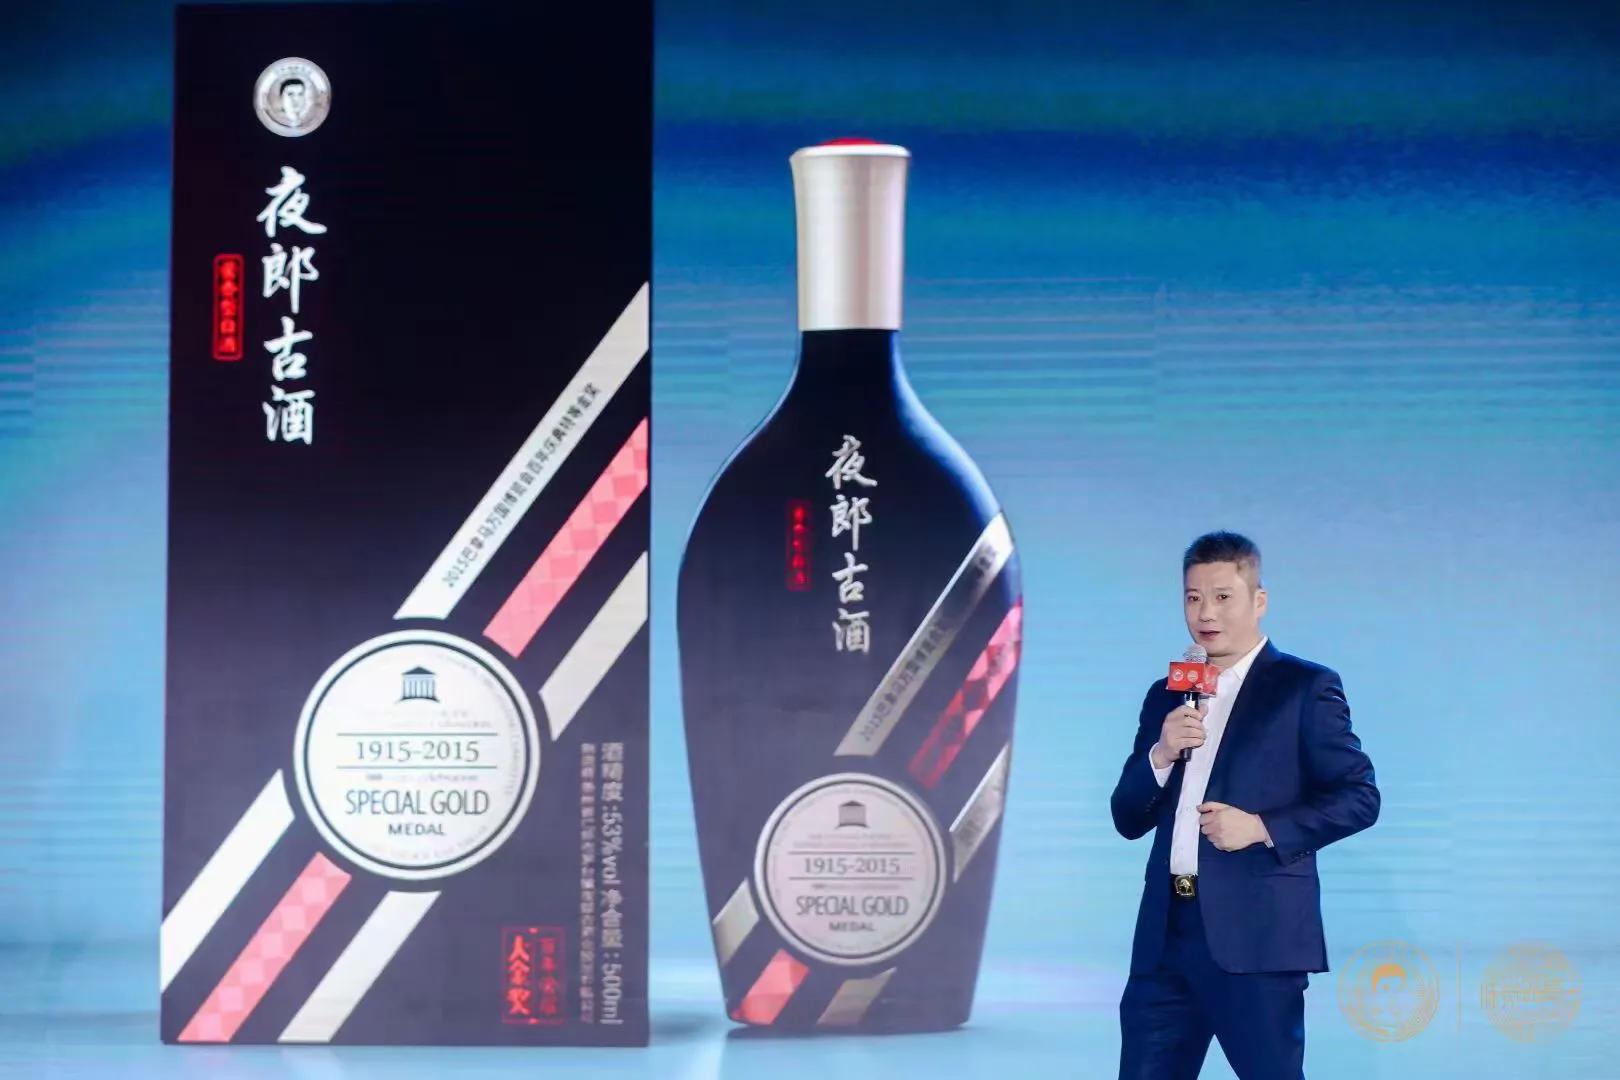 中国高端酱酒价值投资峰会暨夜郎古全国经销商大会举行